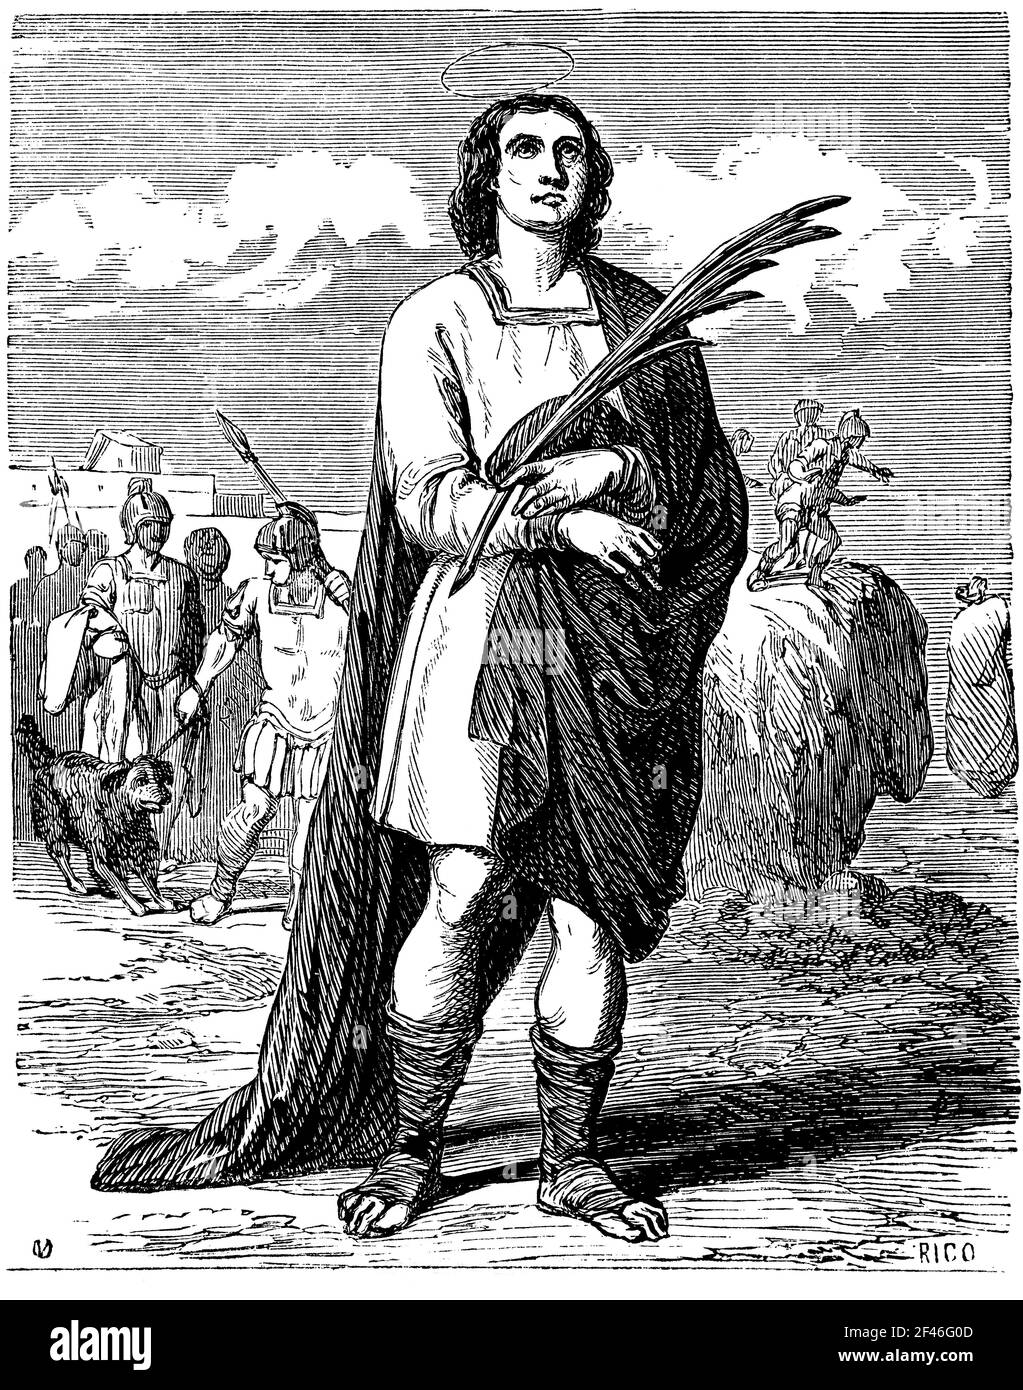 San Ulpiano (?-306), mártir que, siendo adolescente en Tiro, fue arrojado al mar encerrado en un odre durante la persecución bajo el emperador Maximio Daza. Grabado de 1852. Stock Photo